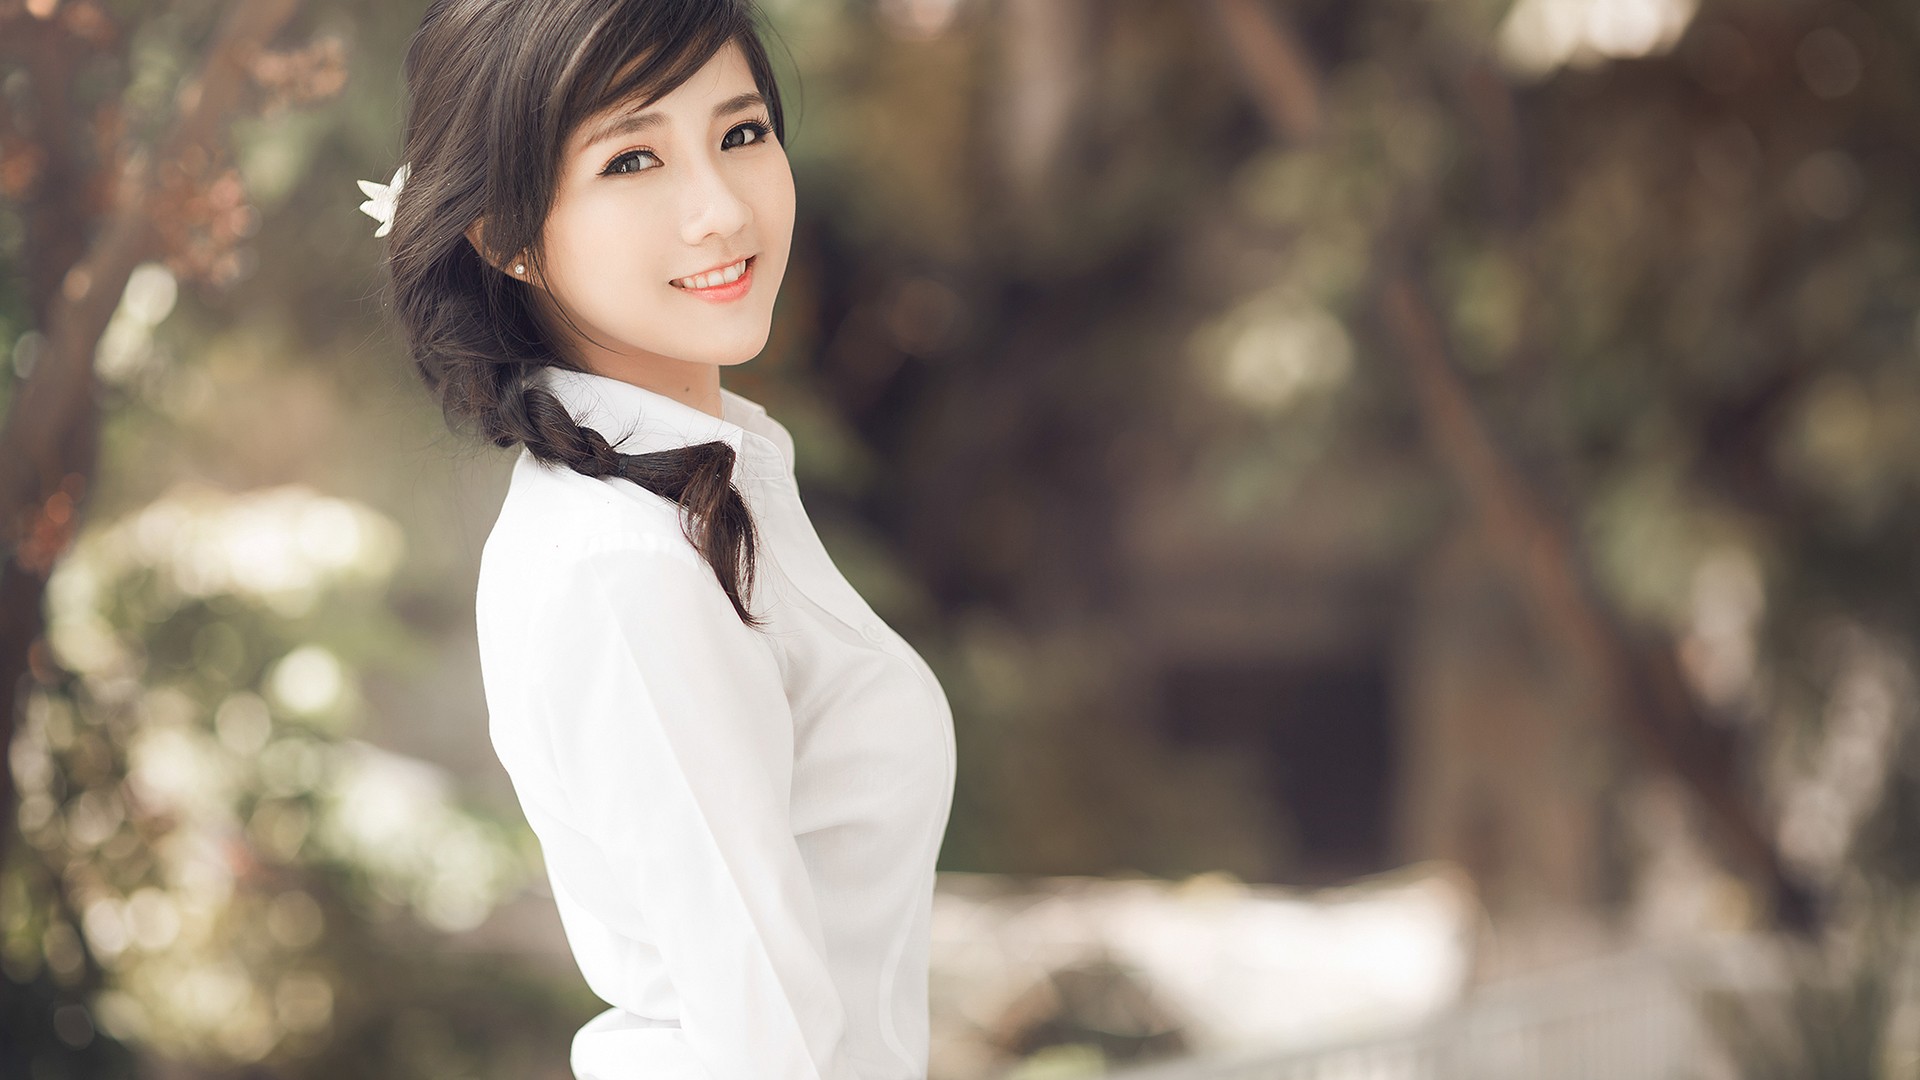 عکس دختر کره ای خوشگل مو مشکی با لبخند کیوت و پیراهن سفید